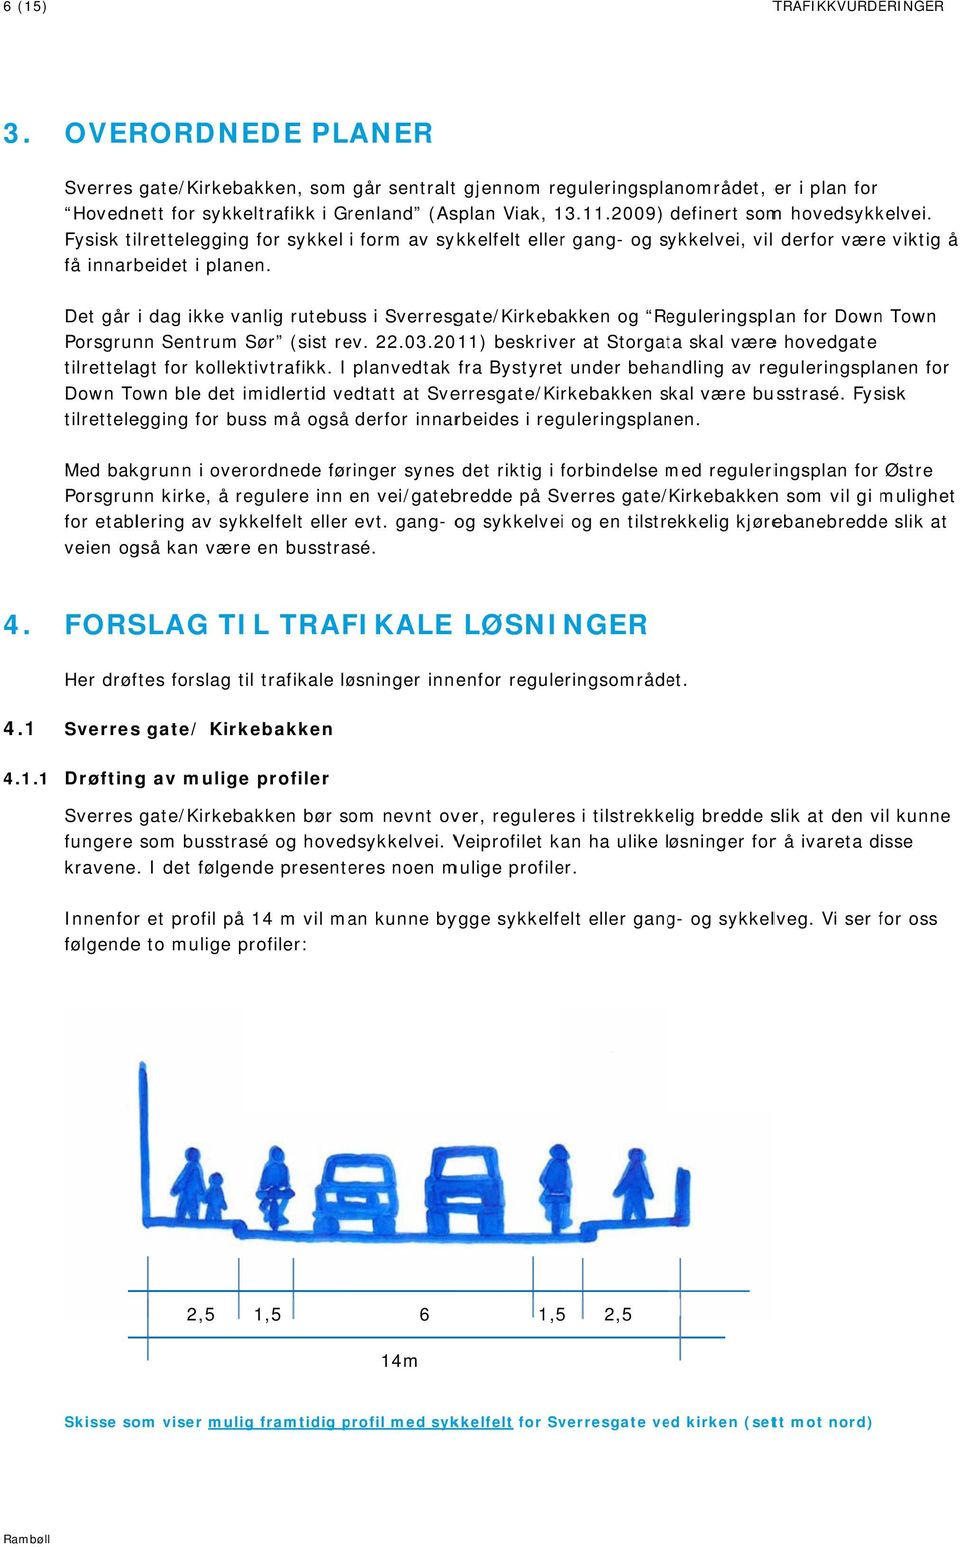 Det går i dag ikke vanlig rutebuss i Sverresgate/Kirkebakken og Reguleringsplan for Down Town Porsgrunn Sentrum Sør (sist rev. 22.03.